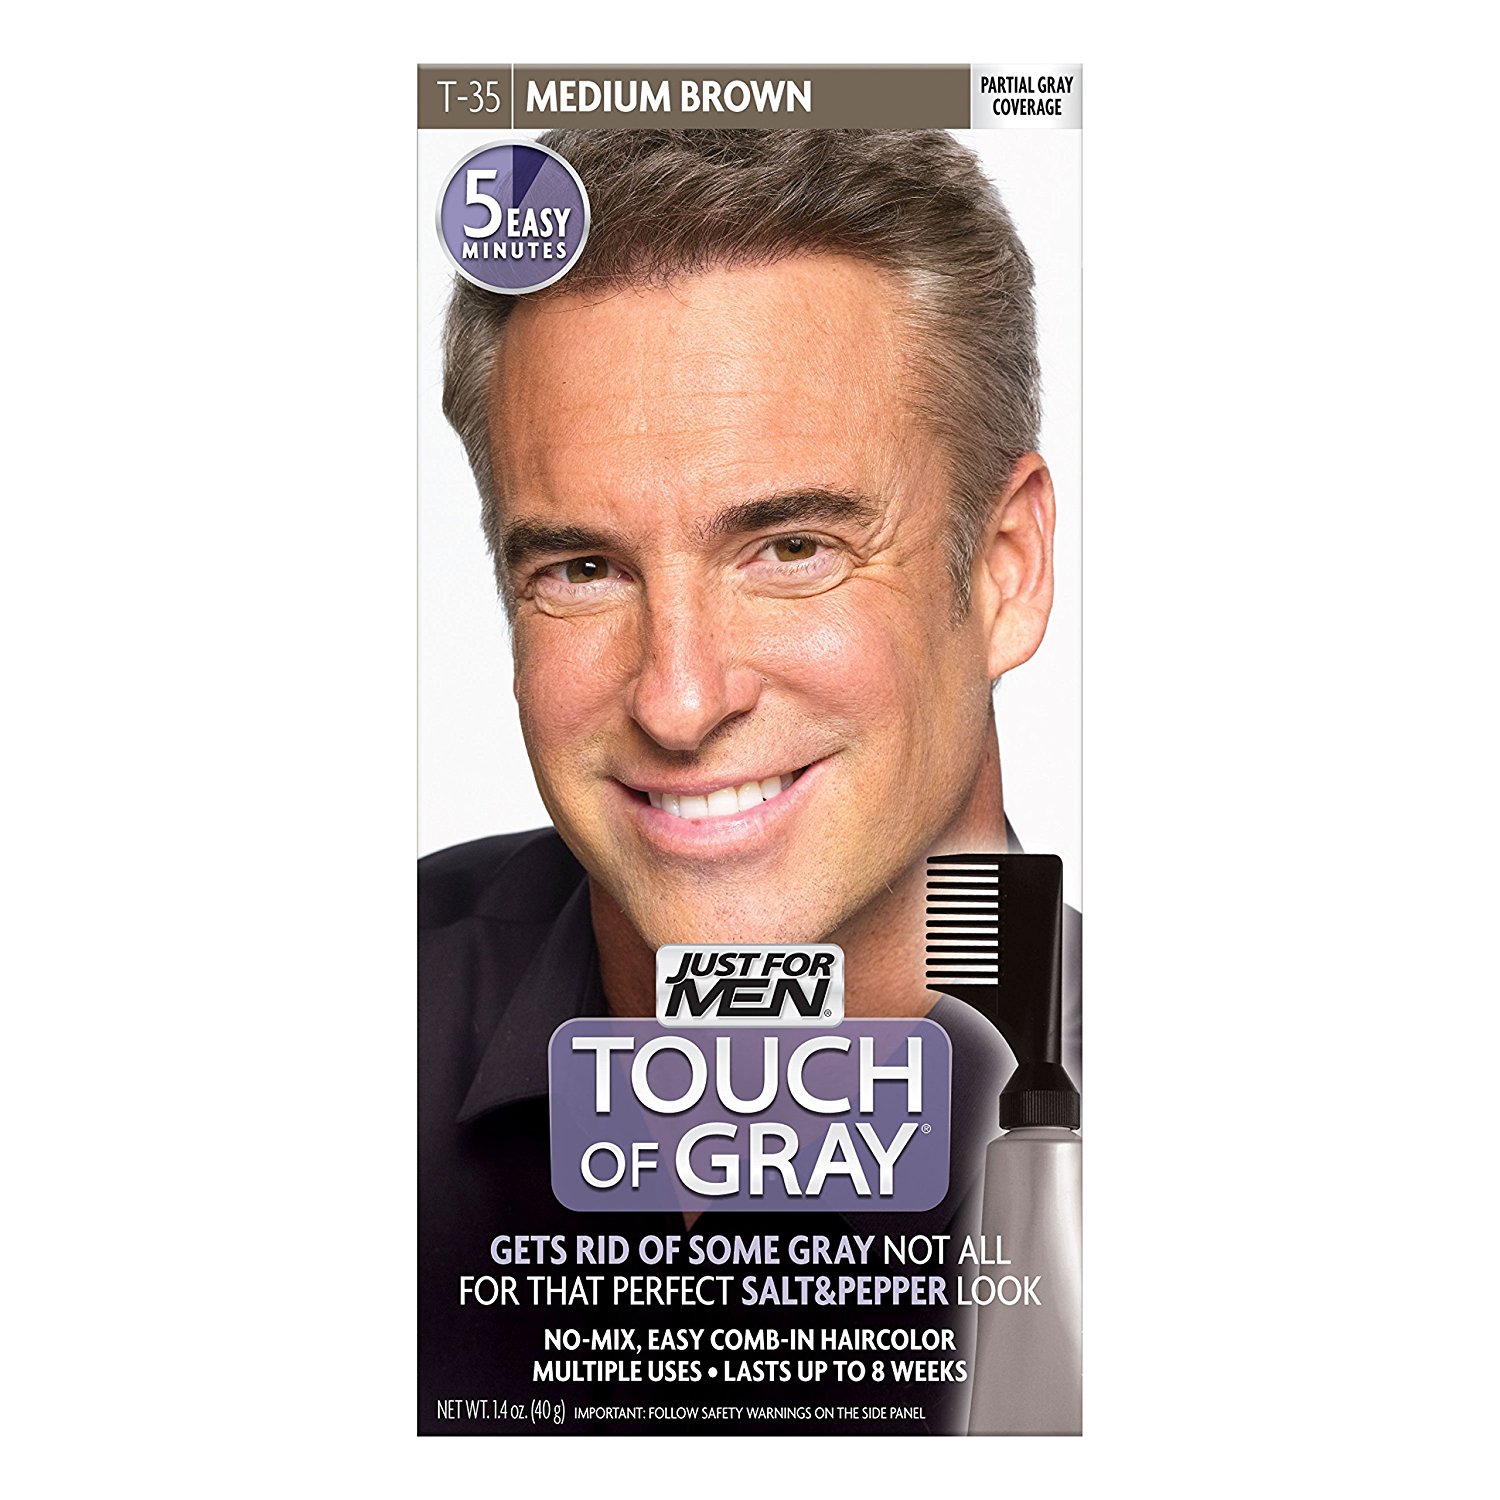 Краска для волос мужская 40. Шампунь краска для седых волос для мужчин. Just for men – мужская краска для волос. Краска для волос мужская tach of Grey. Цвет седины для волос для мужчин.